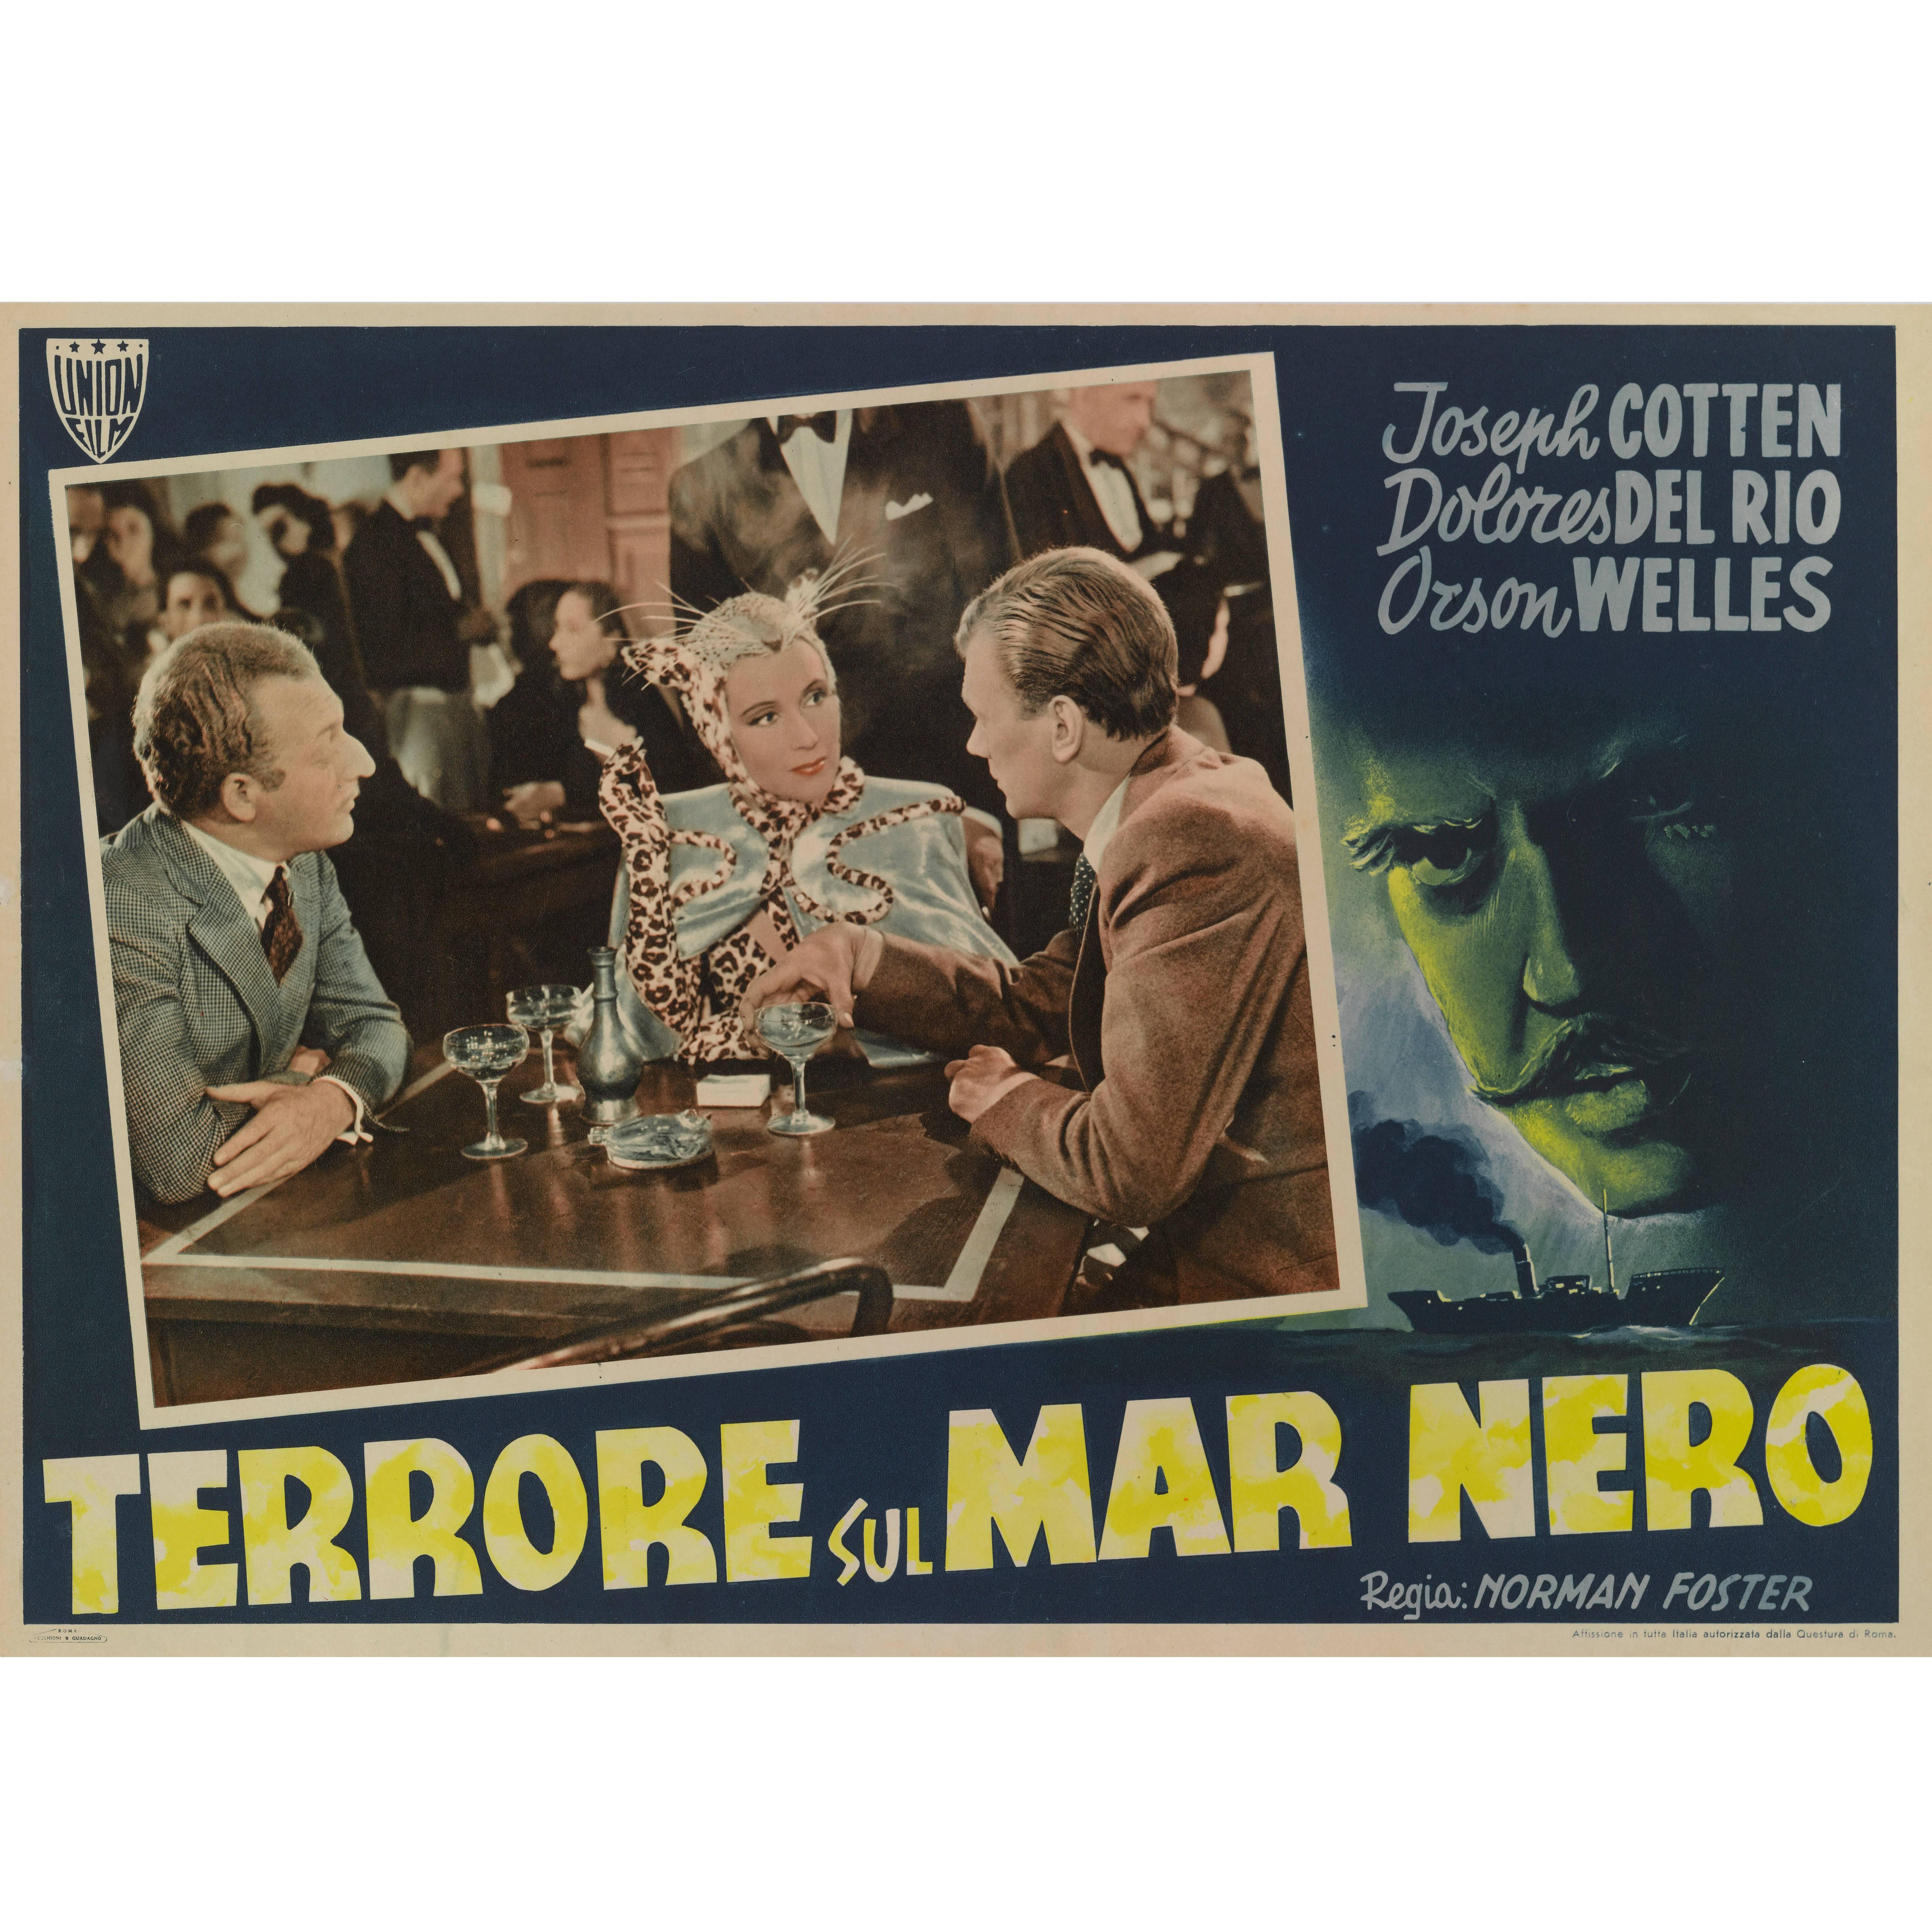 Journey into Fear, Terrore Sul Mar Nero, Original Italian Movie Poster